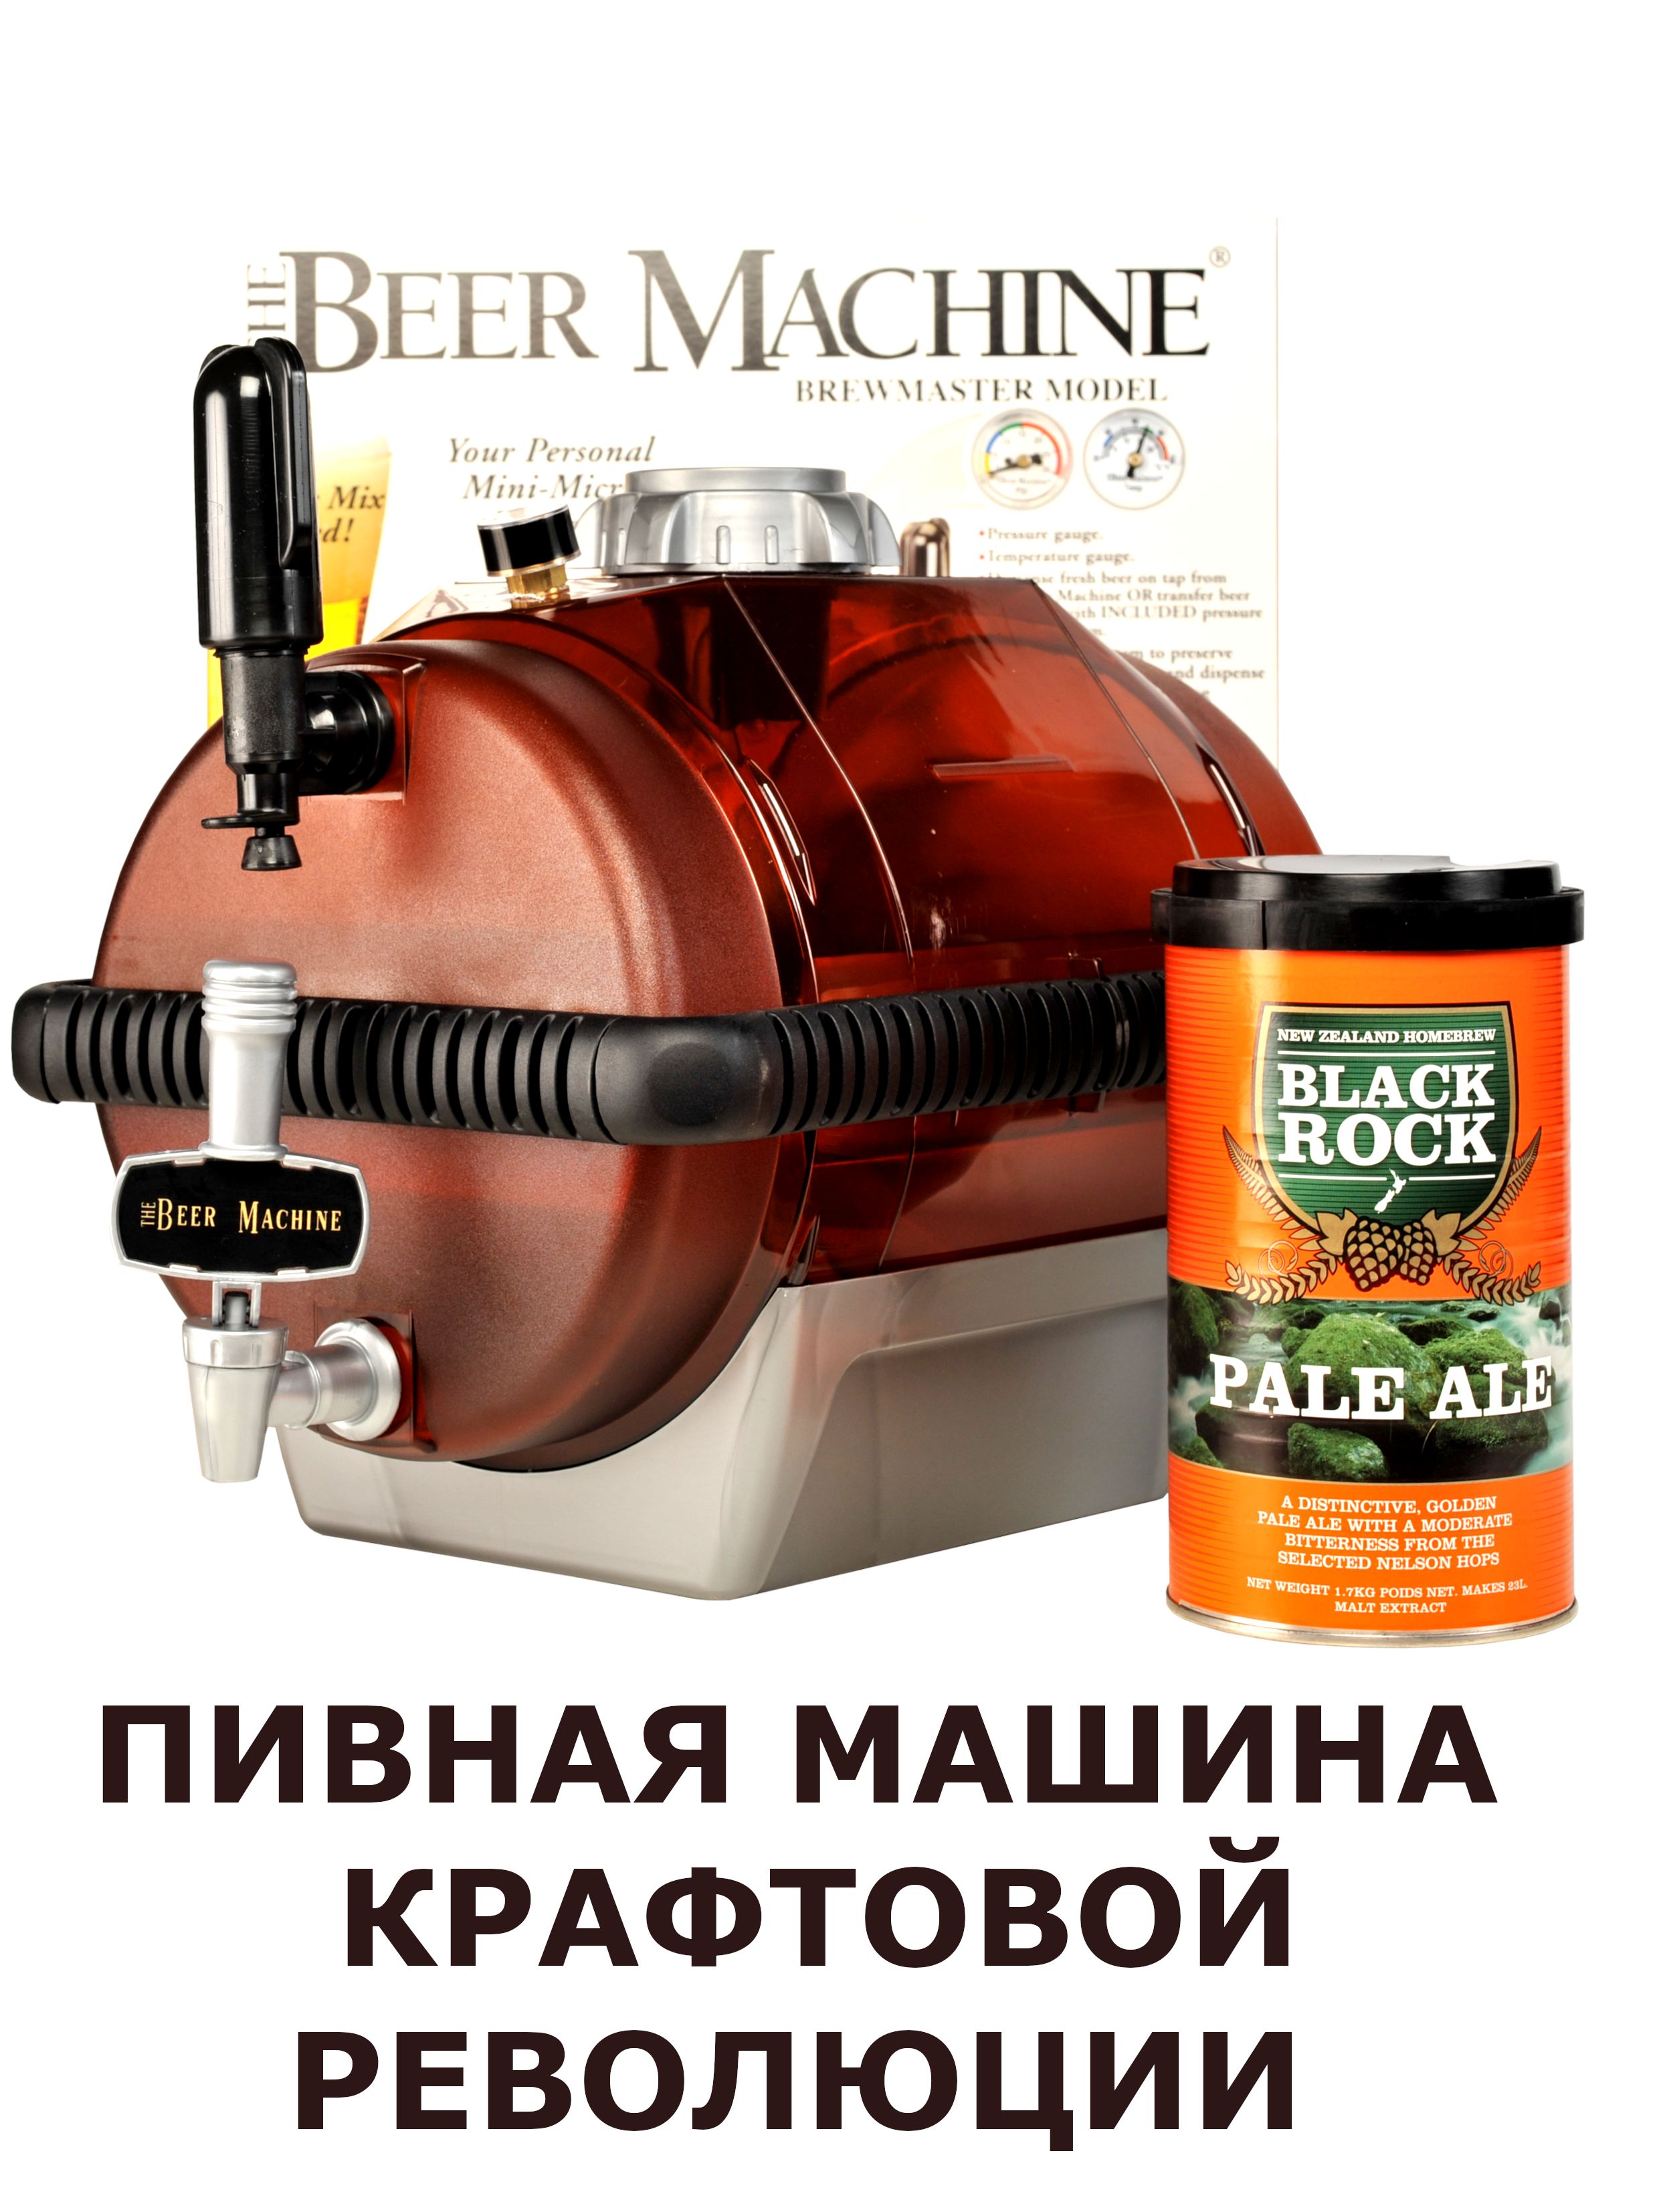 Мини-пивоварня BEERMACHINE 2000